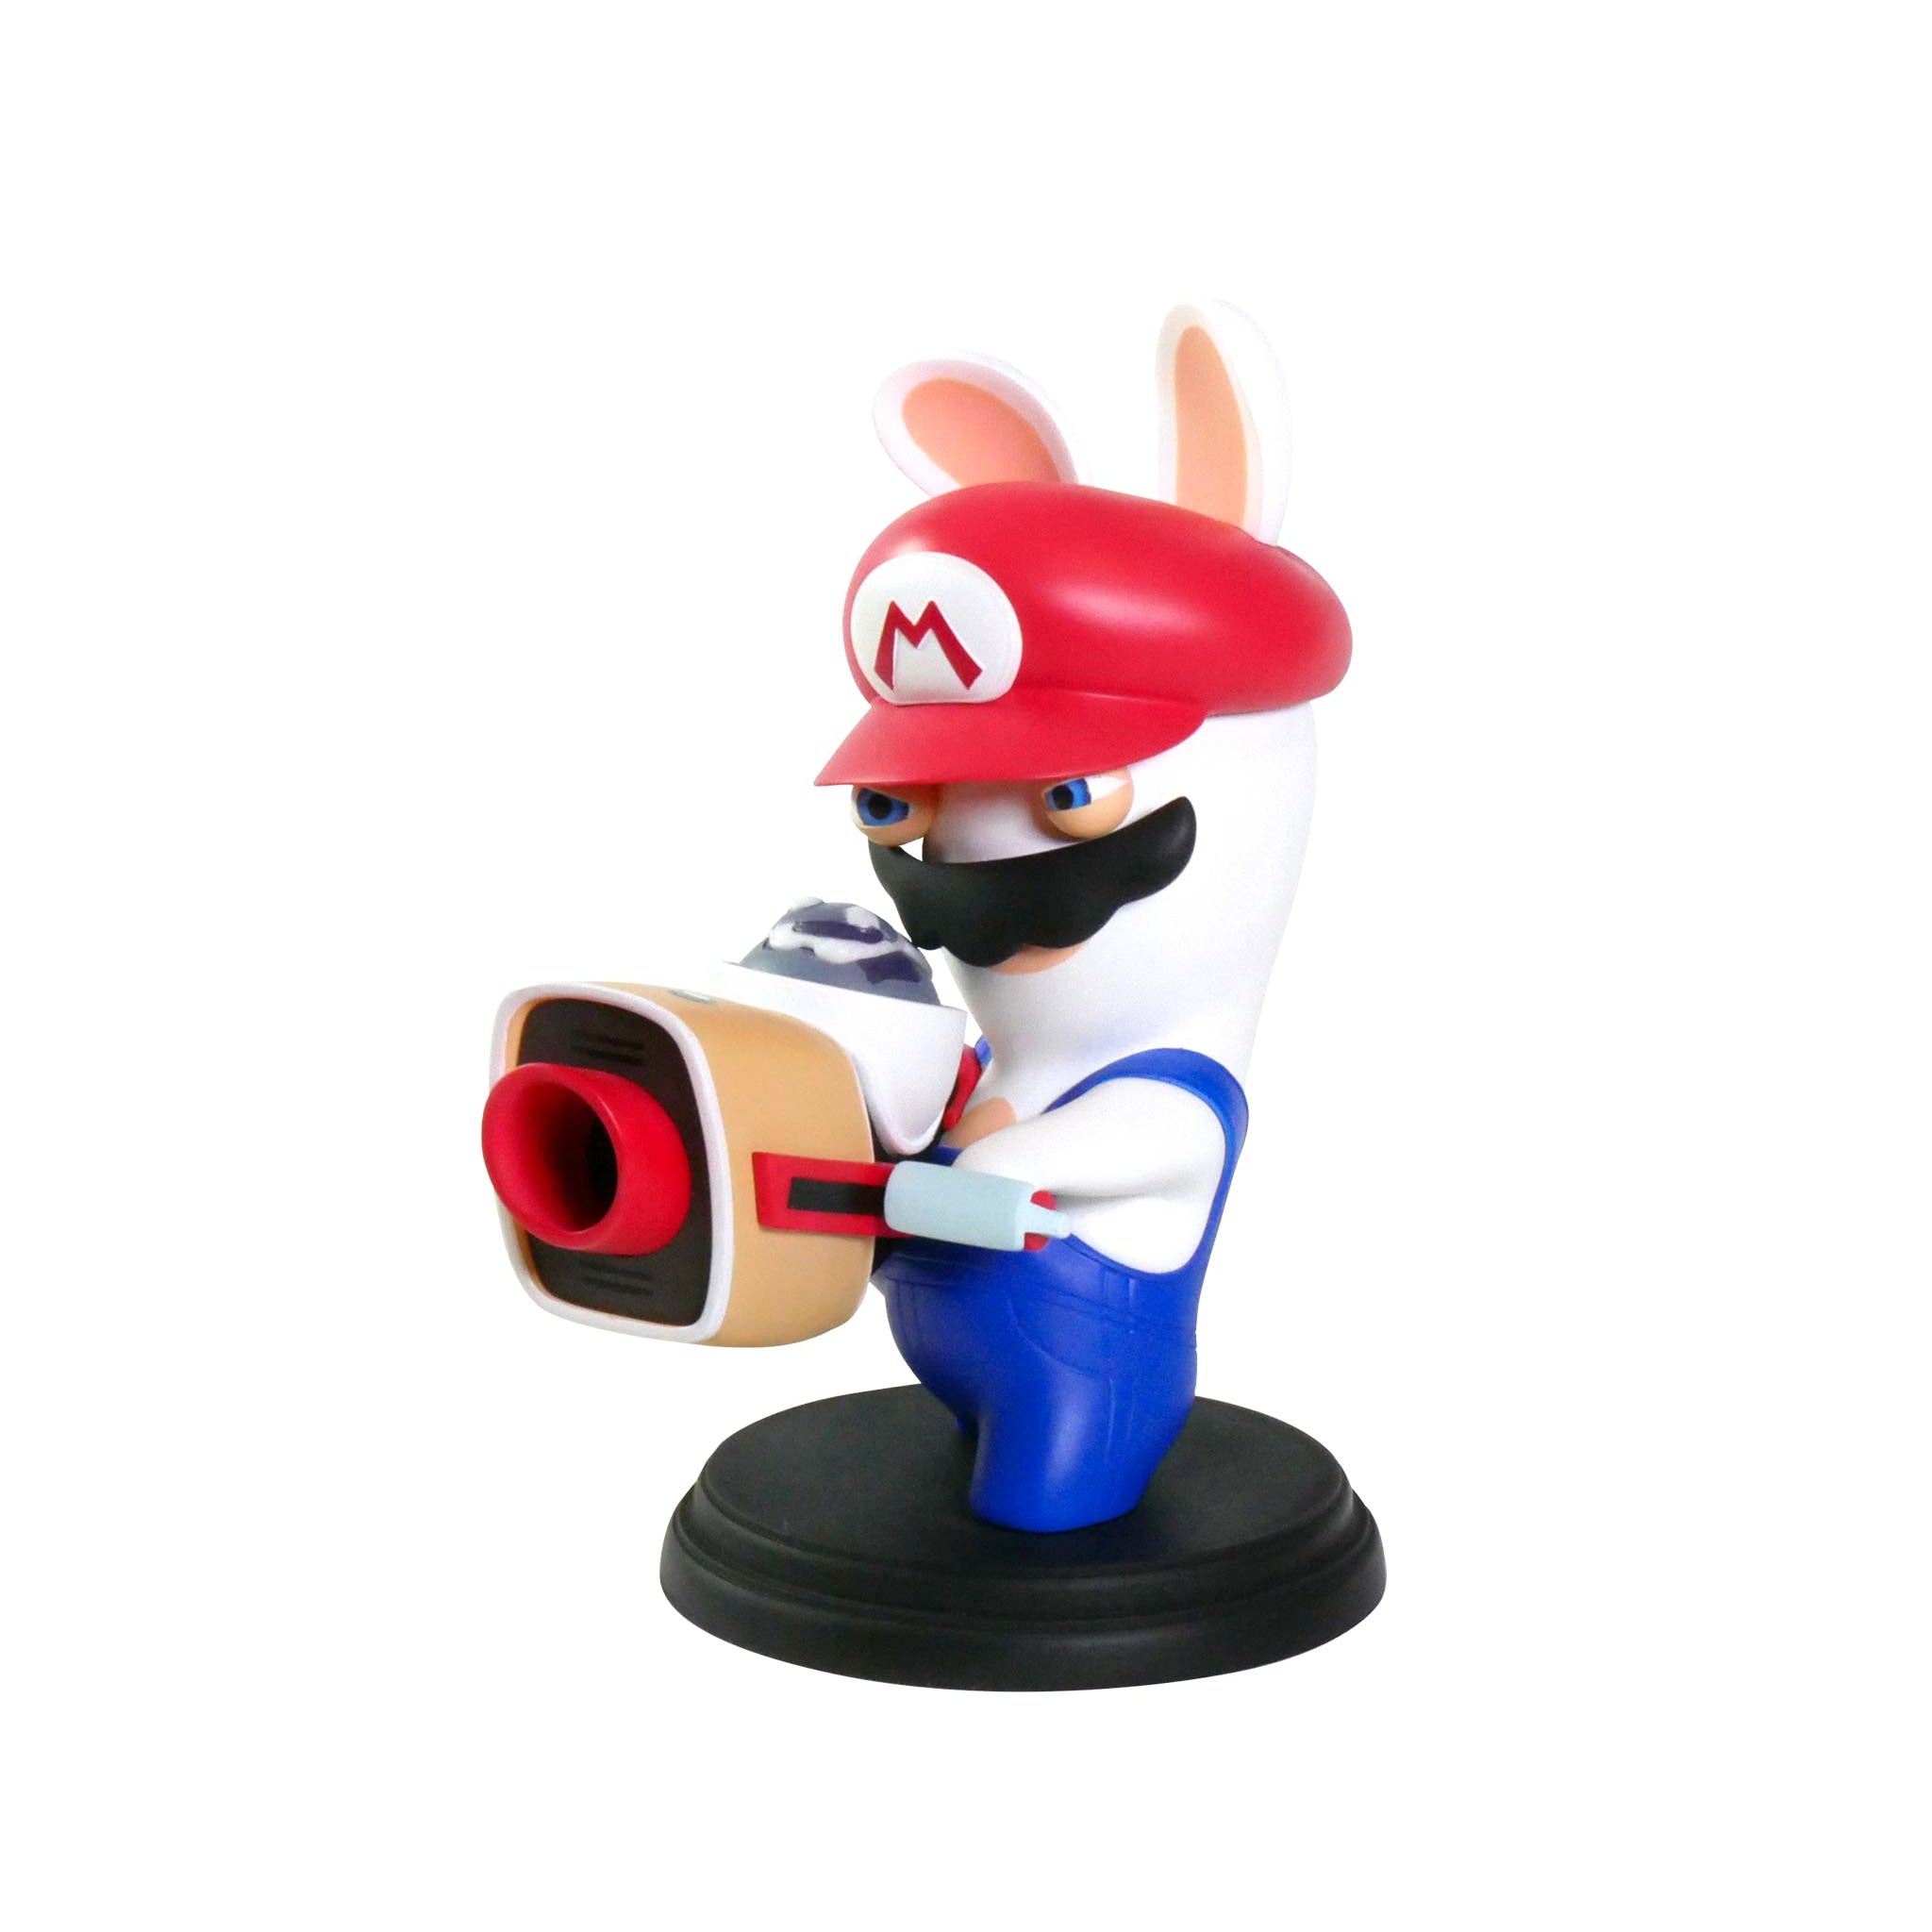 Mario + Rabbids Kingdom Battle Collector's Edition - Rabbid Mario Figure